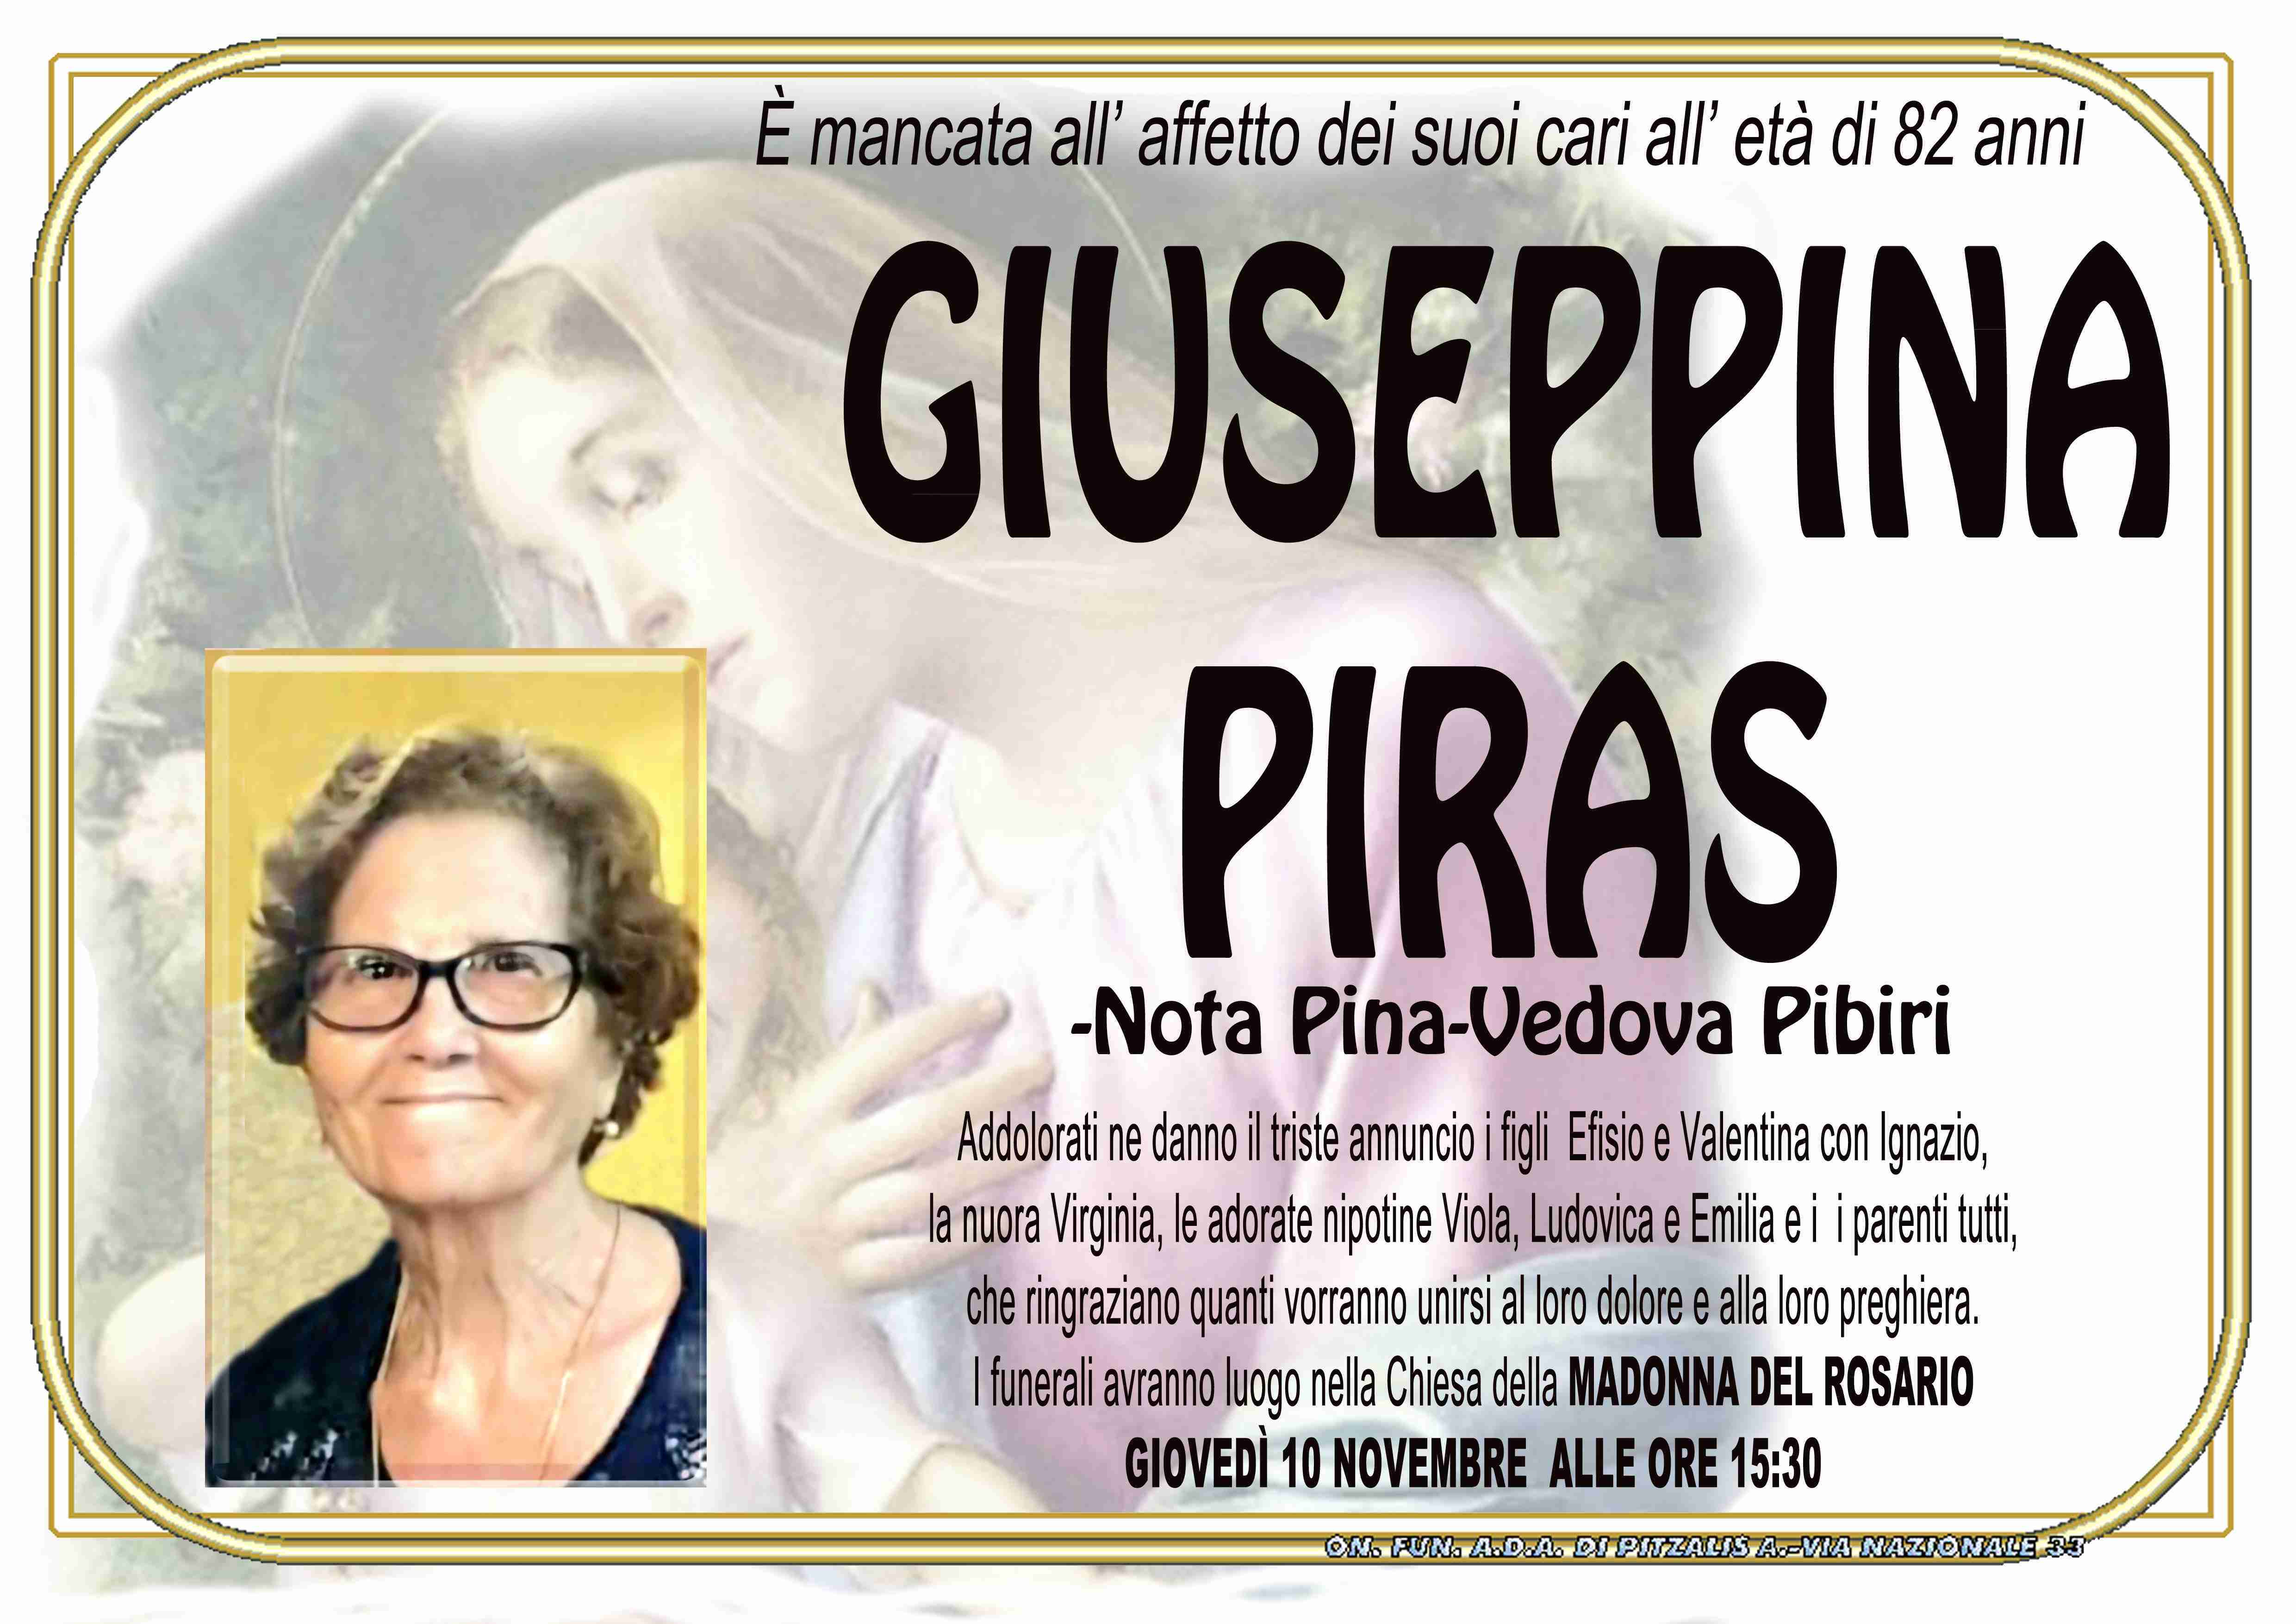 Giuseppina Piras